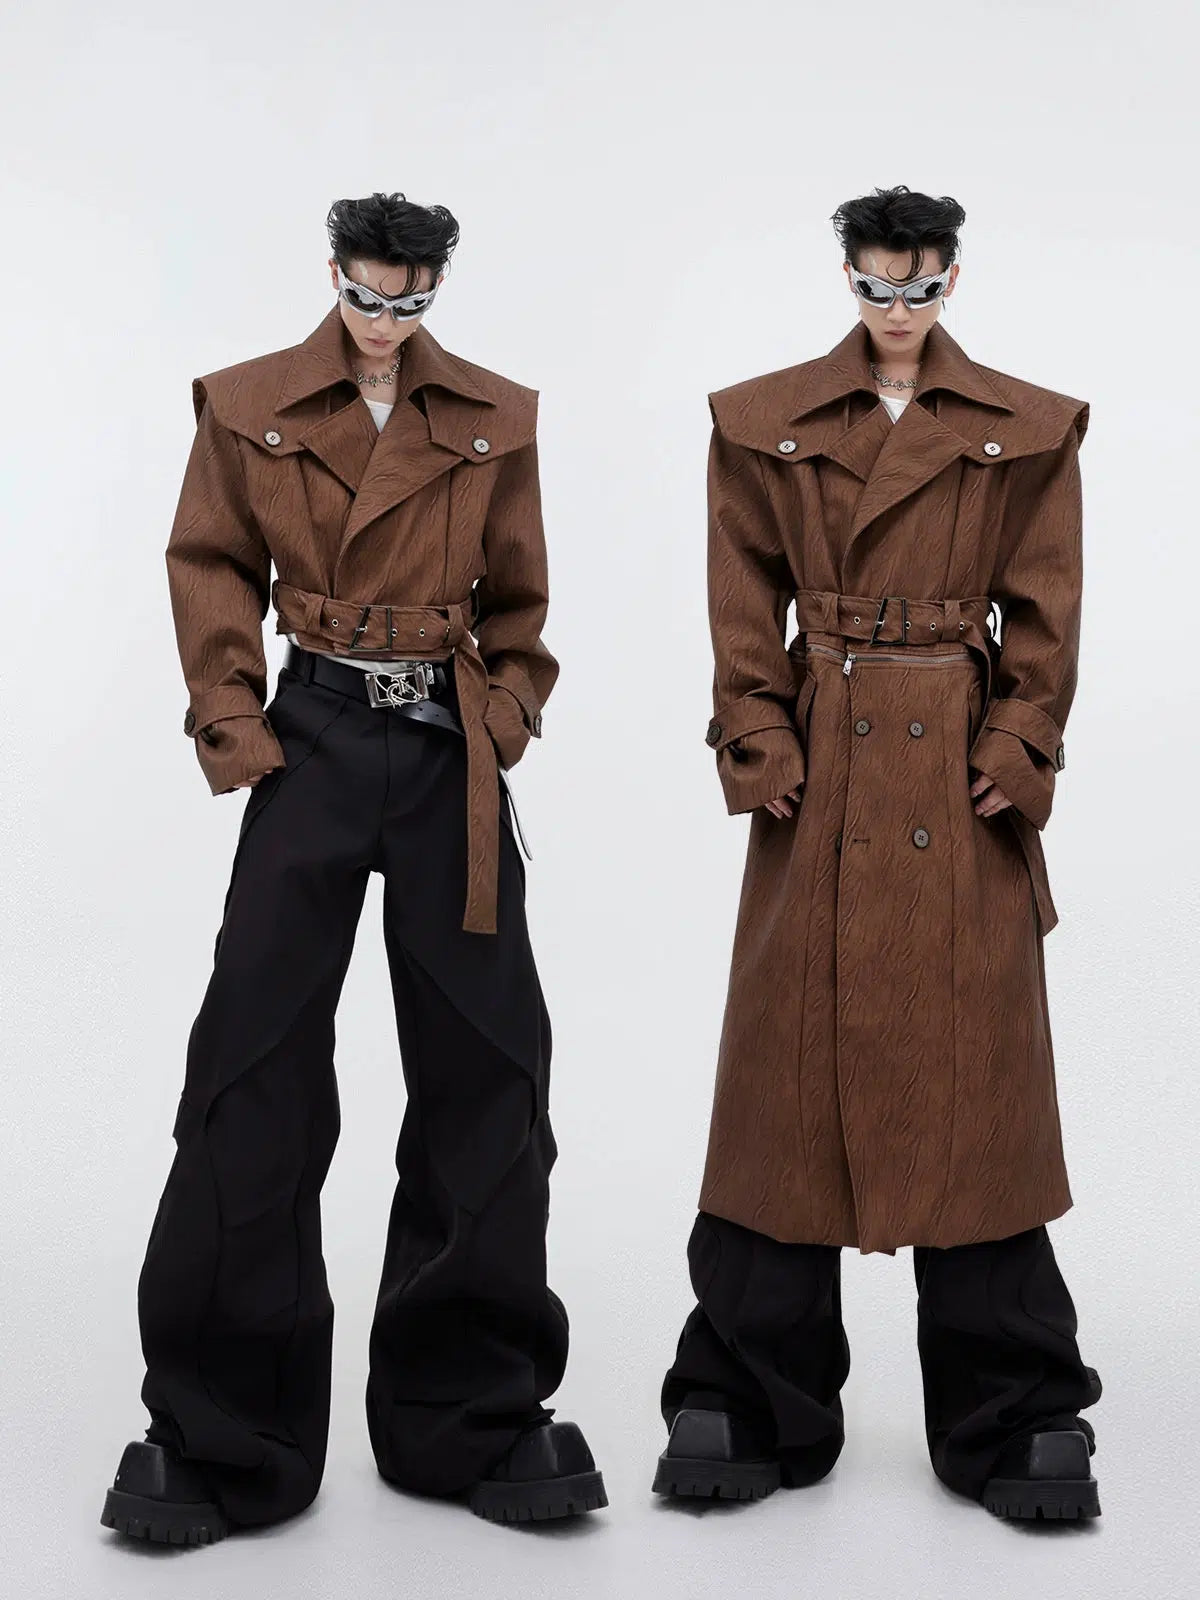 Argue Culture Detachable Half Zipped Trench Coat Korean Street Fashion Long Coat By Argue Culture Shop Online at OH Vault